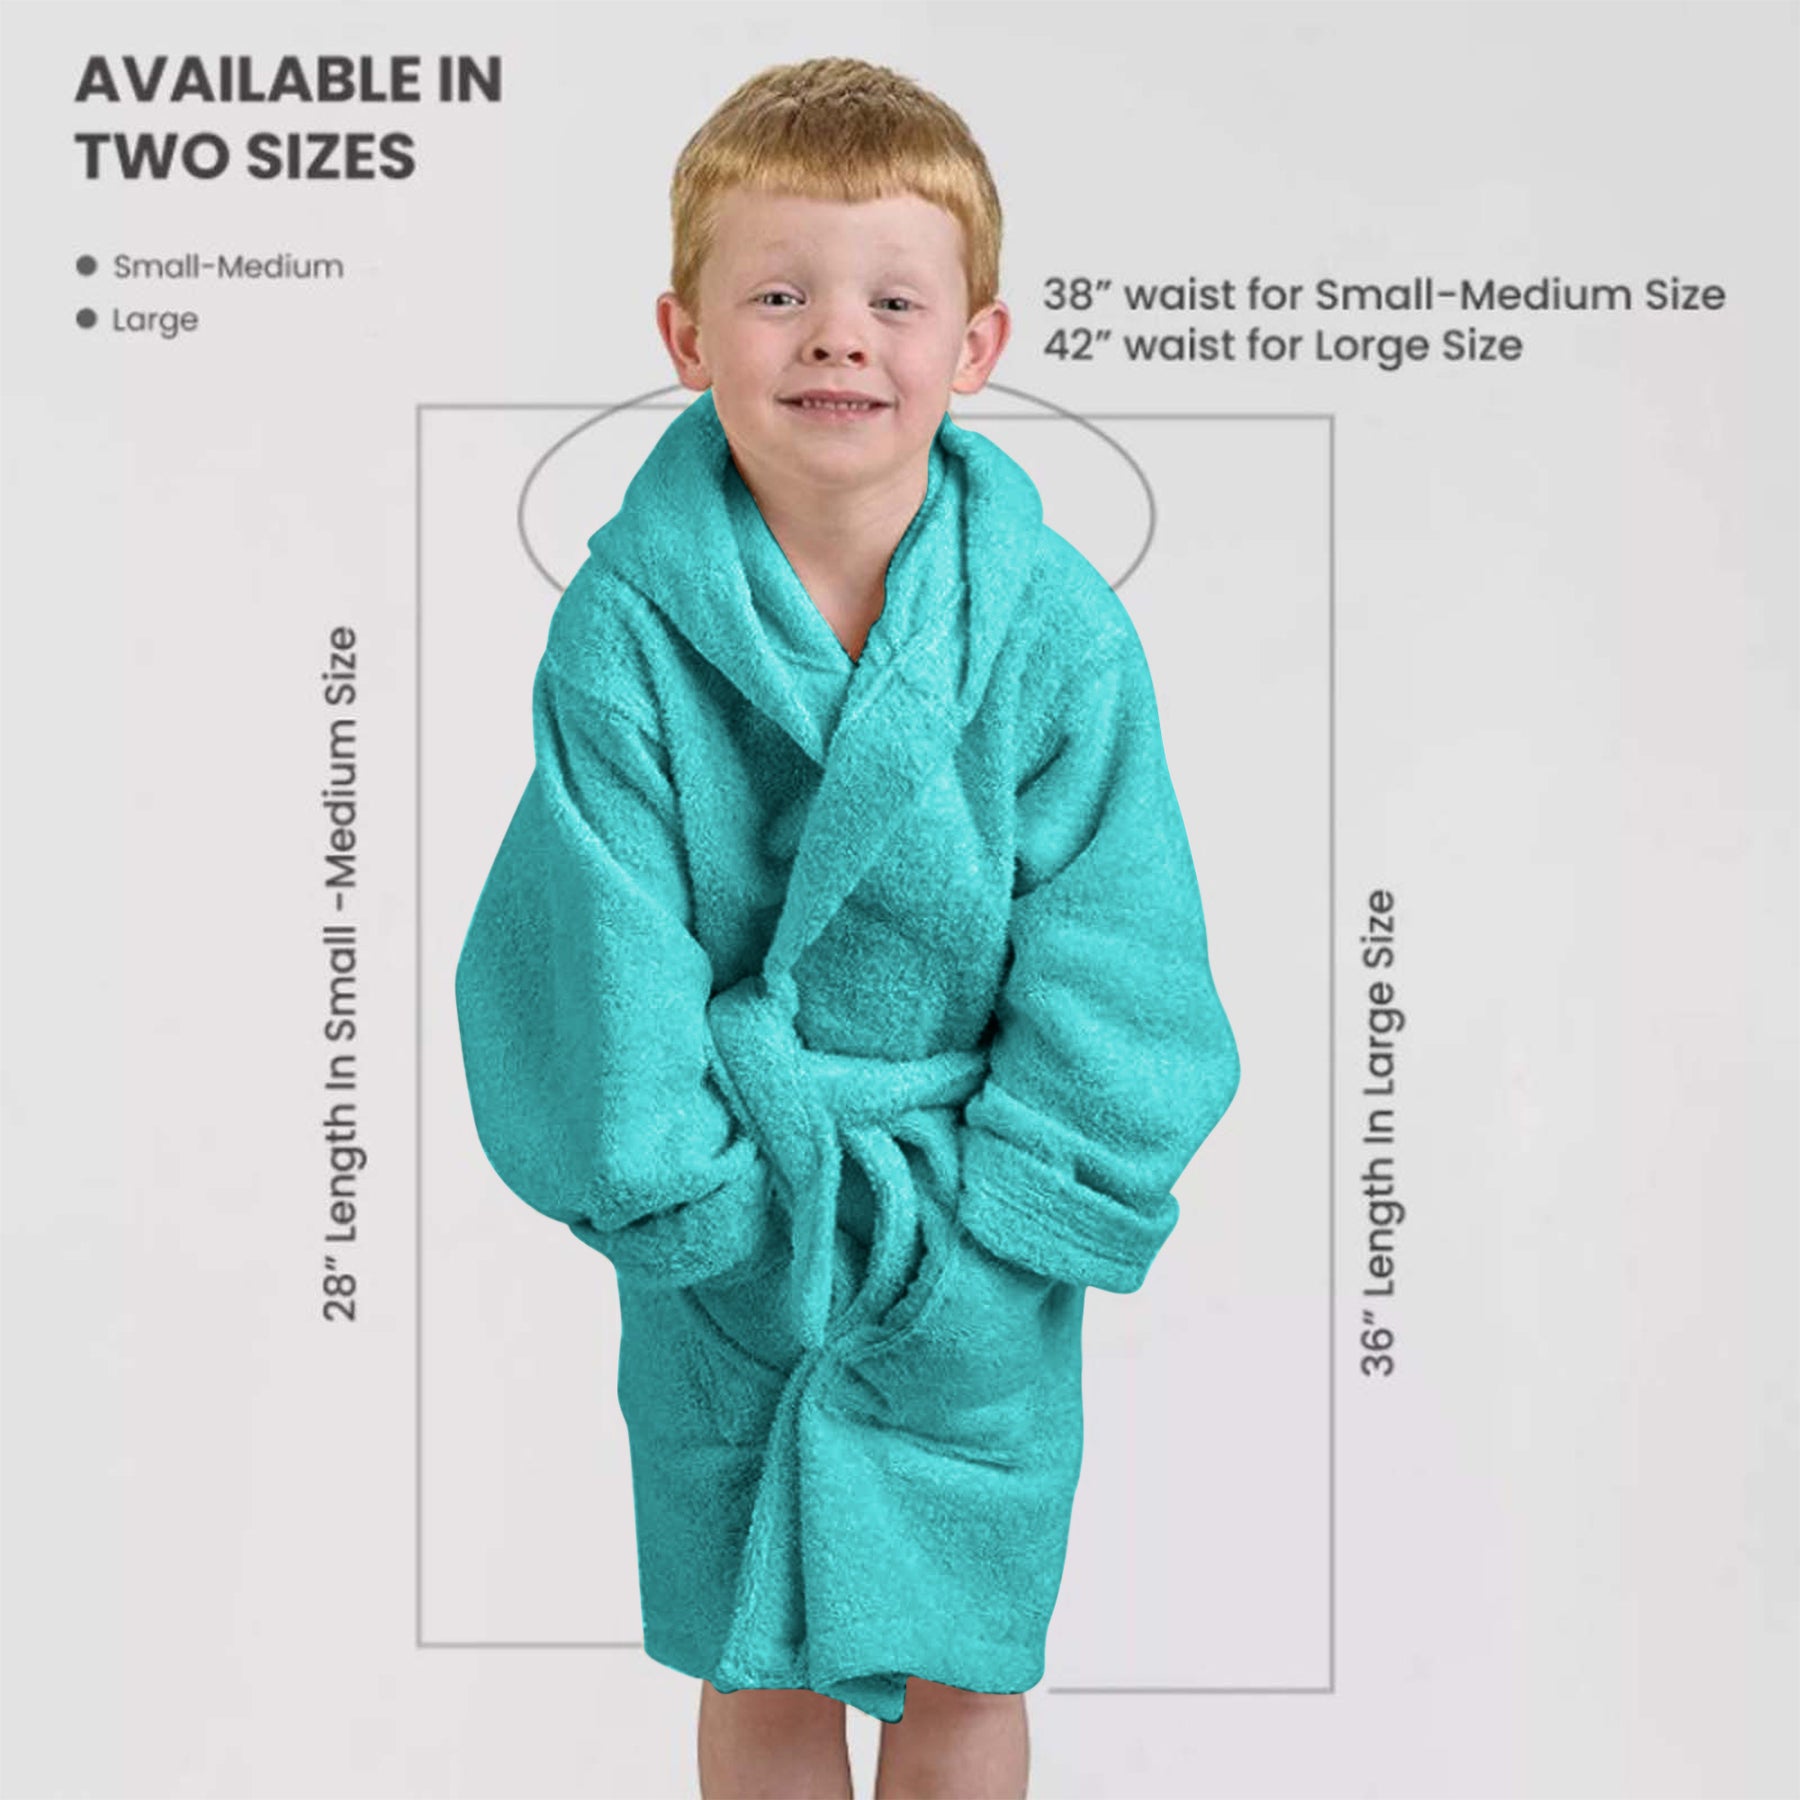 Cotton Ultra-Soft Terry Lightweight Kids Unisex Hooded Bathrobe - Teal